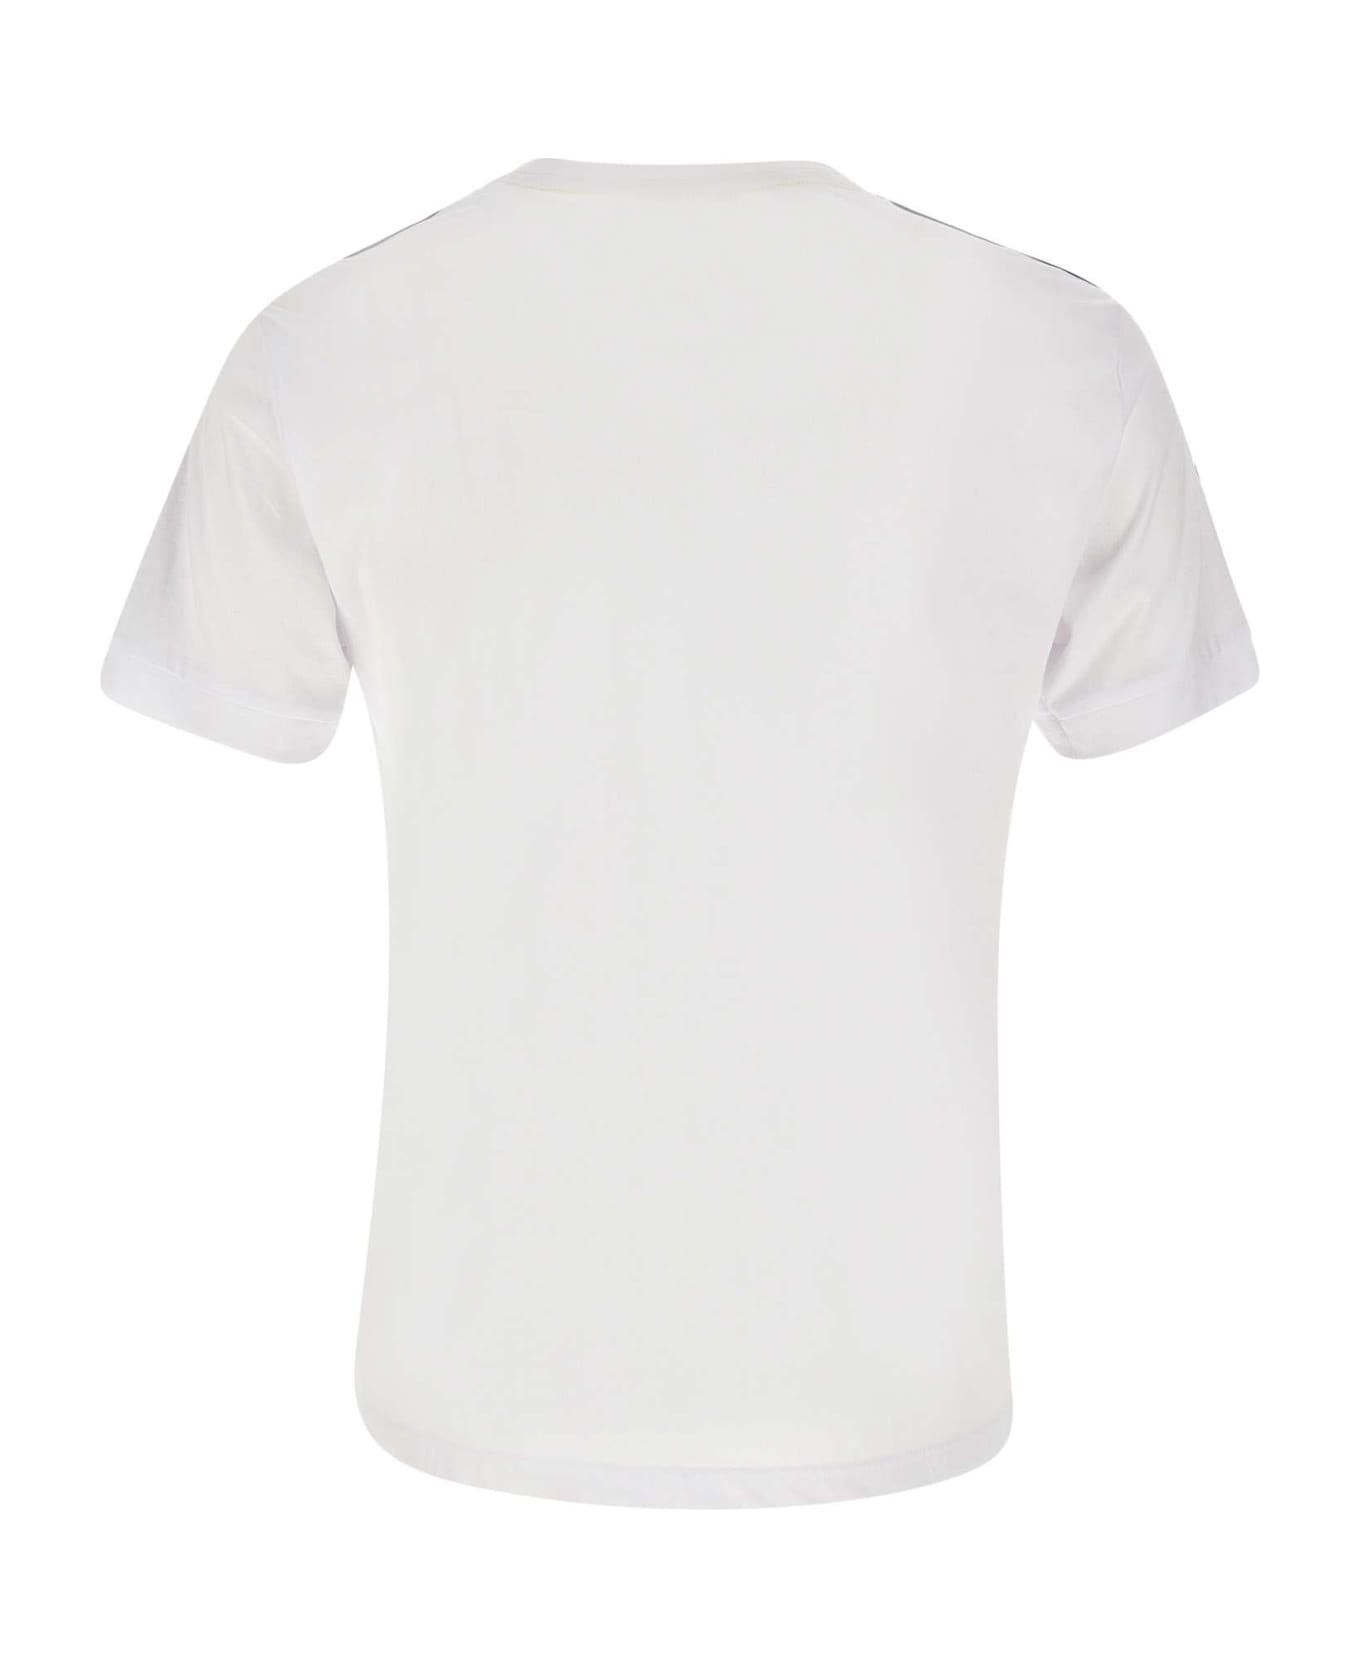 EA7 Cotton T-shirt